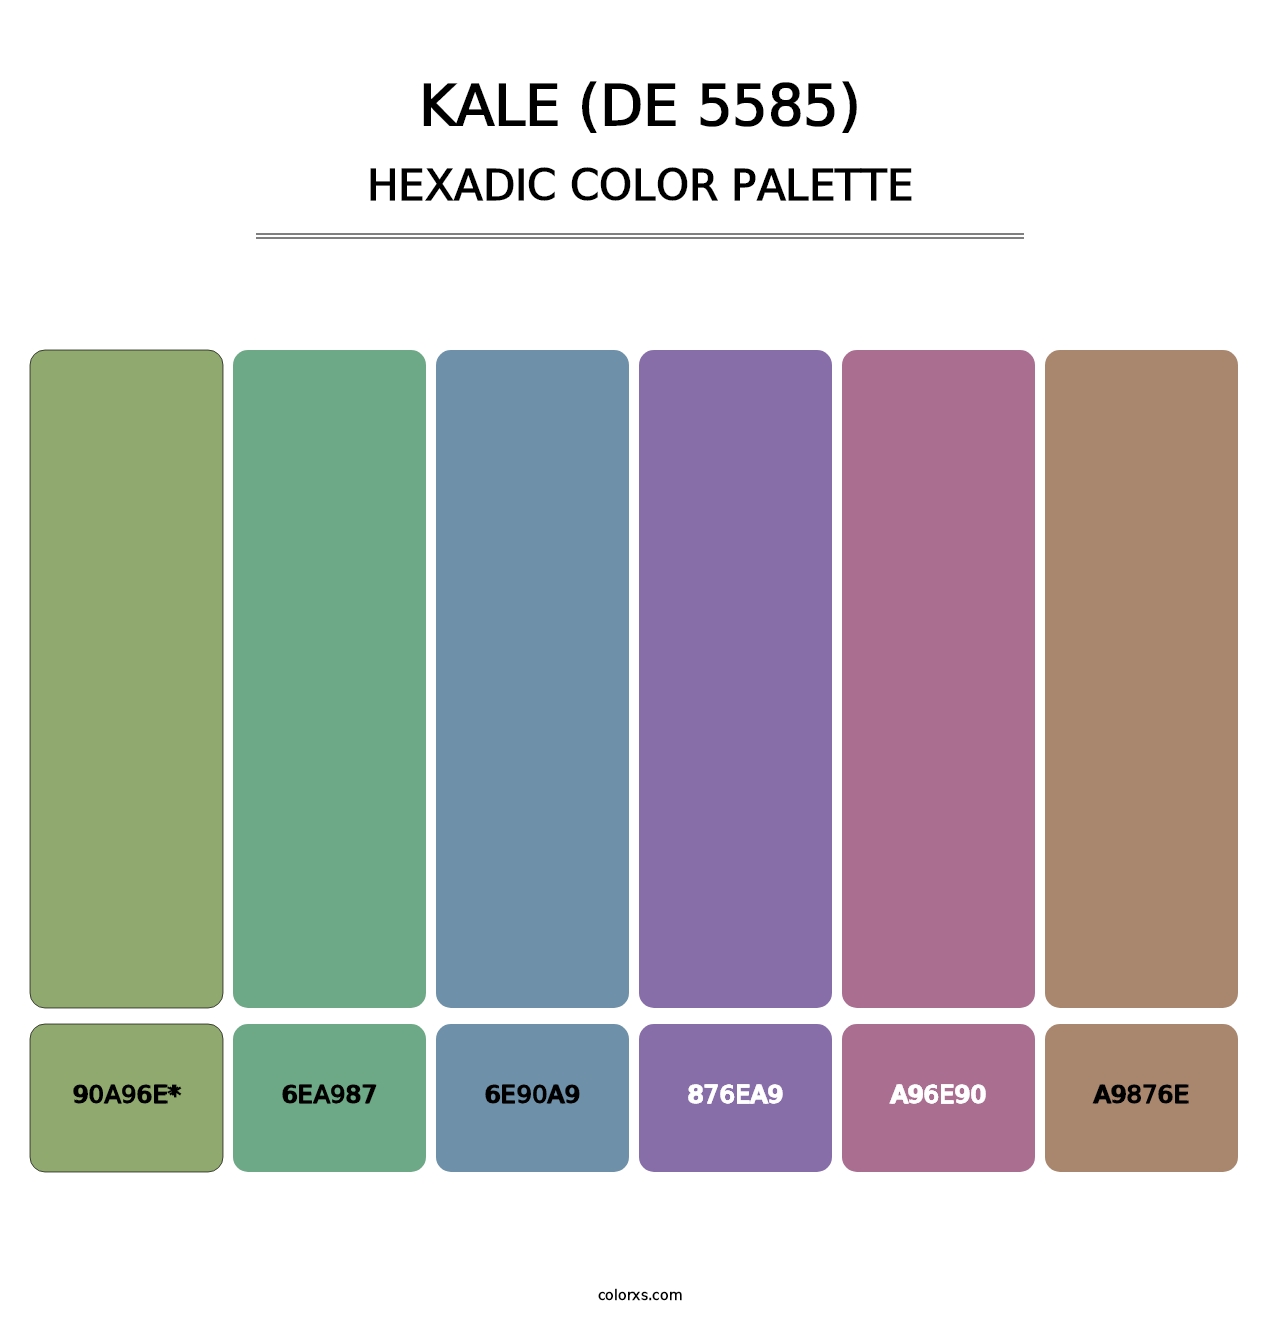 Kale (DE 5585) - Hexadic Color Palette